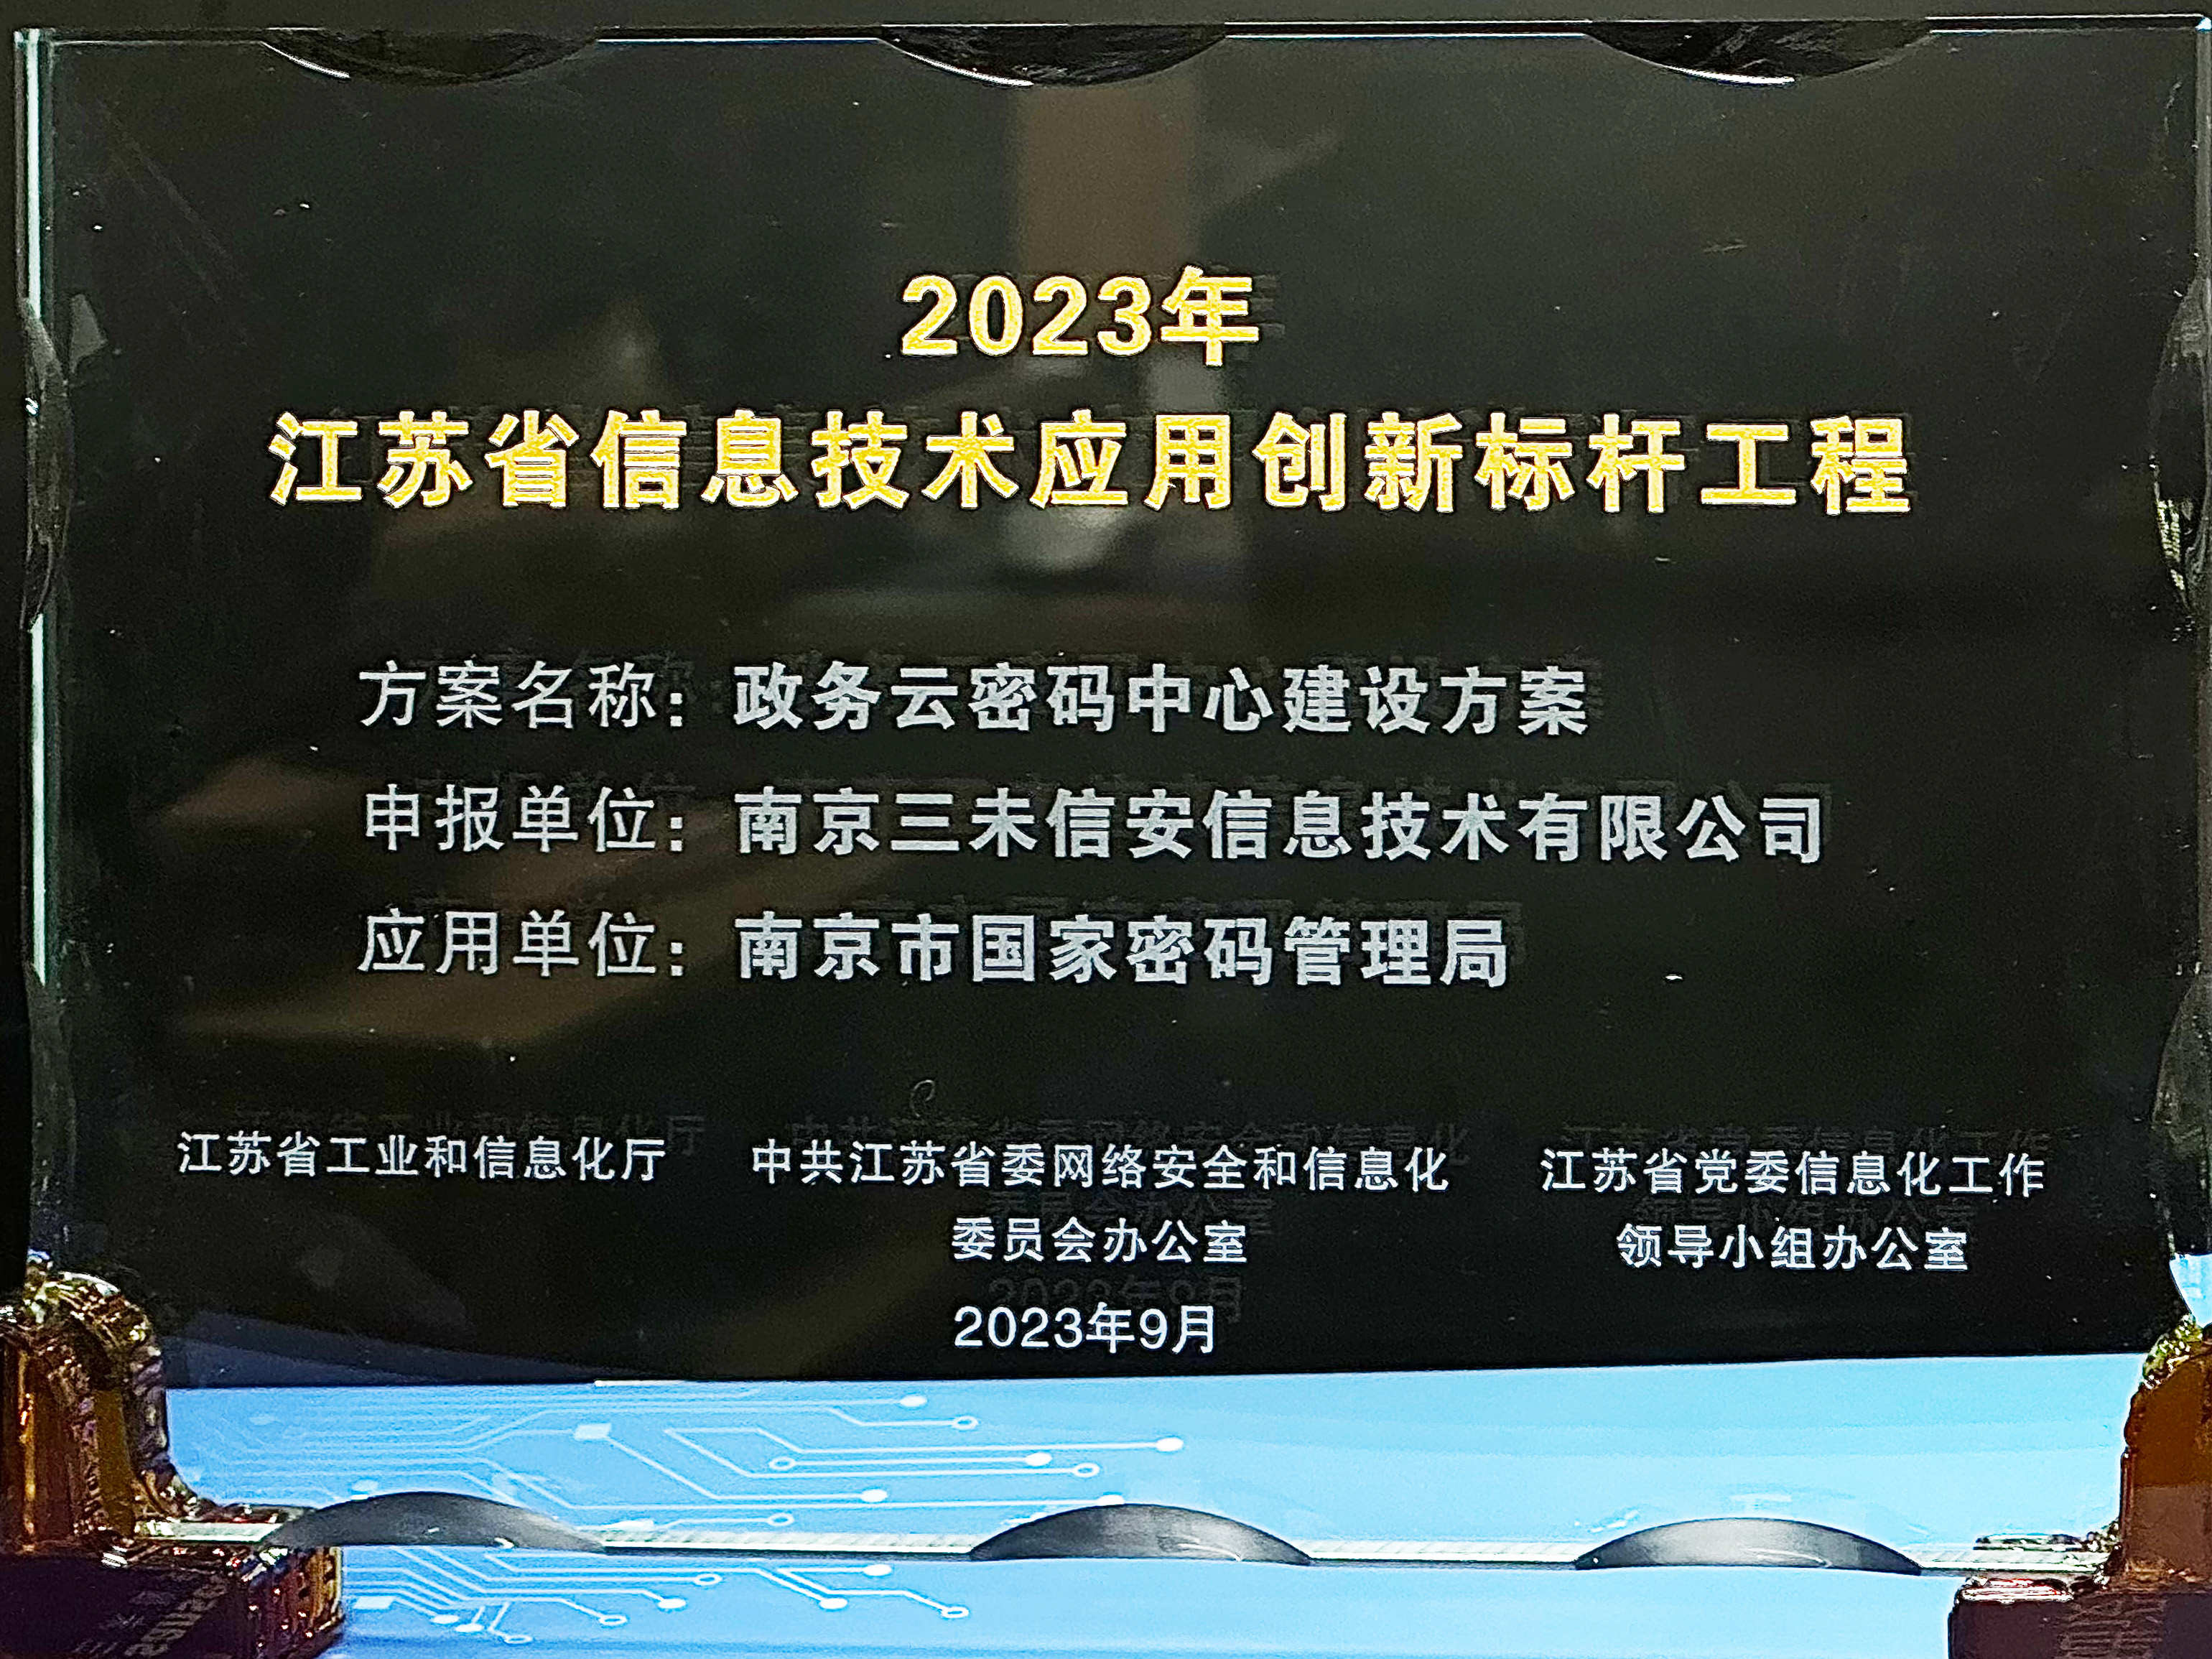 三未信安政务云方案成功评选2023年江苏省信息技术应用创新标杆工程